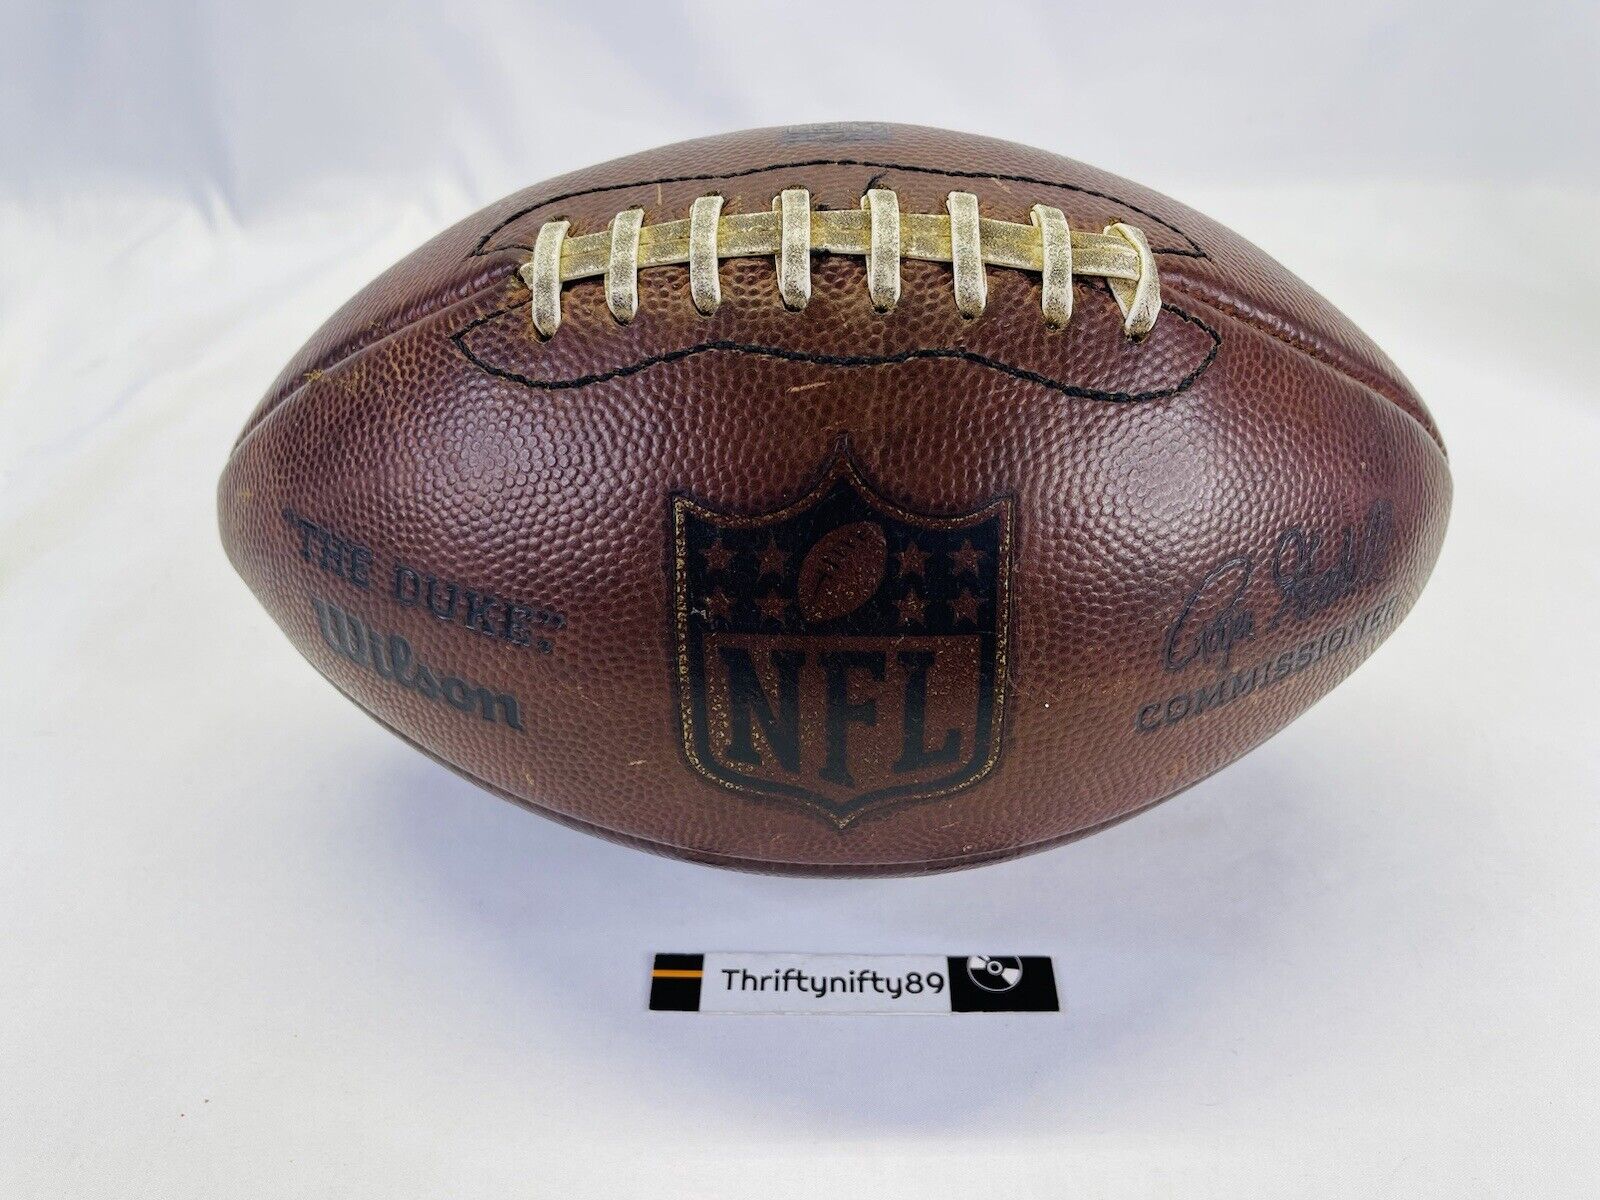 Official Wilson NFL Football “The Duke” Good Condition ( Roger Goodell )